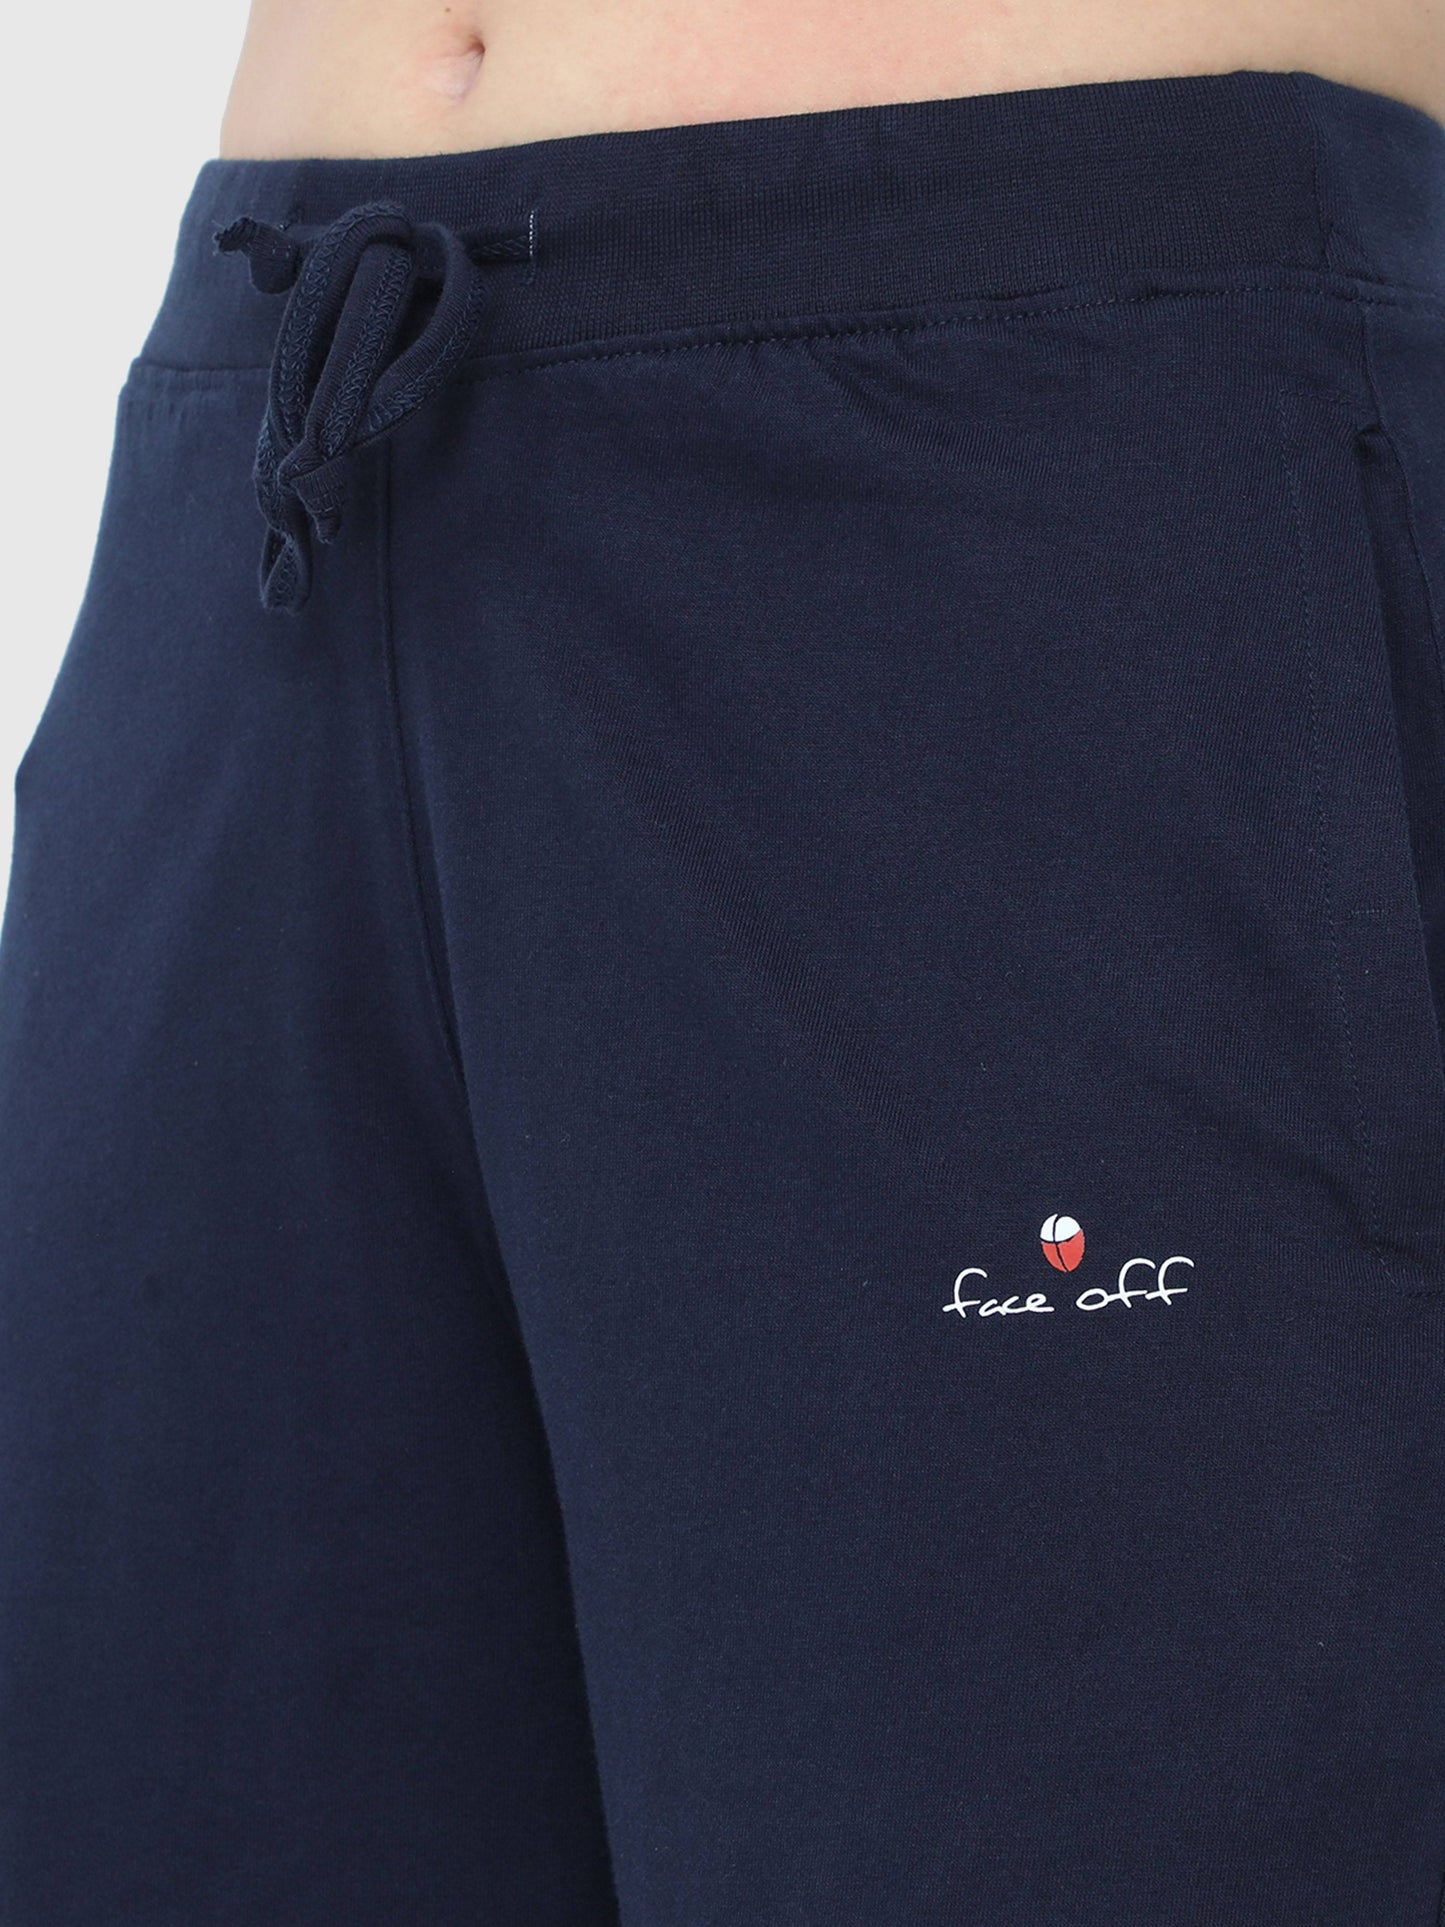 Royal Dark Blue Solid Shorts CWBD-17101